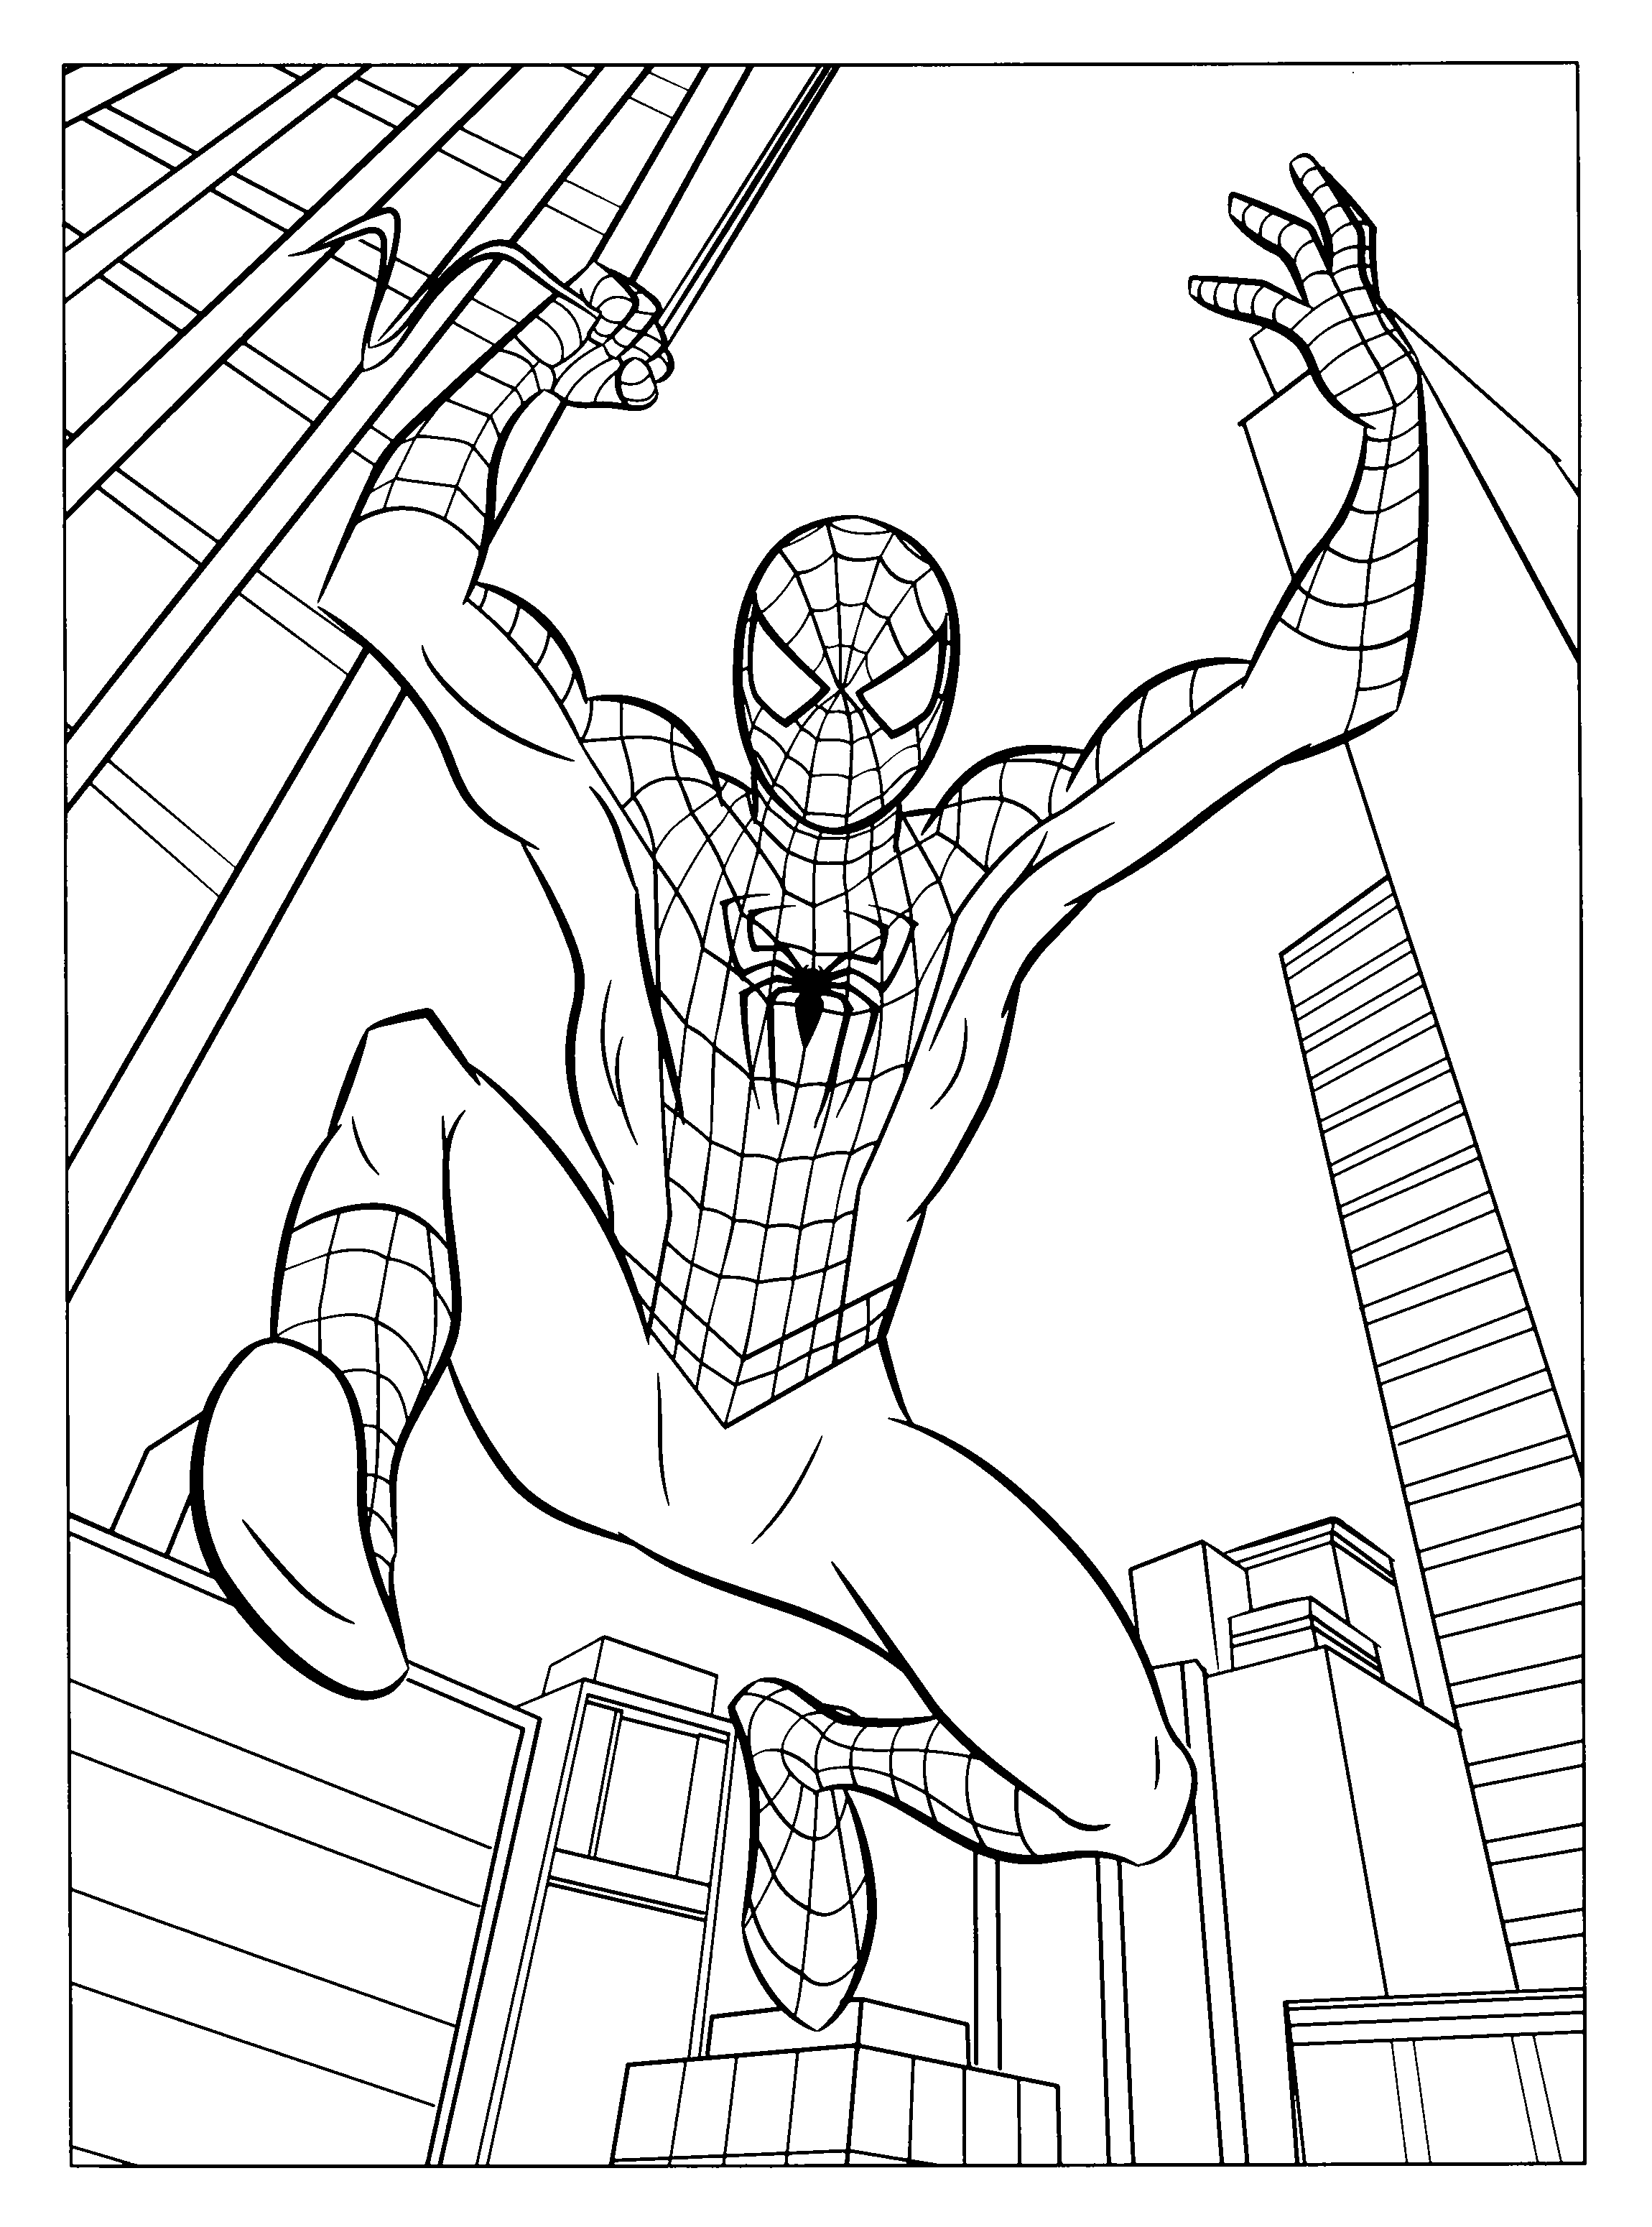 Homem-aranha salta através de edifícios